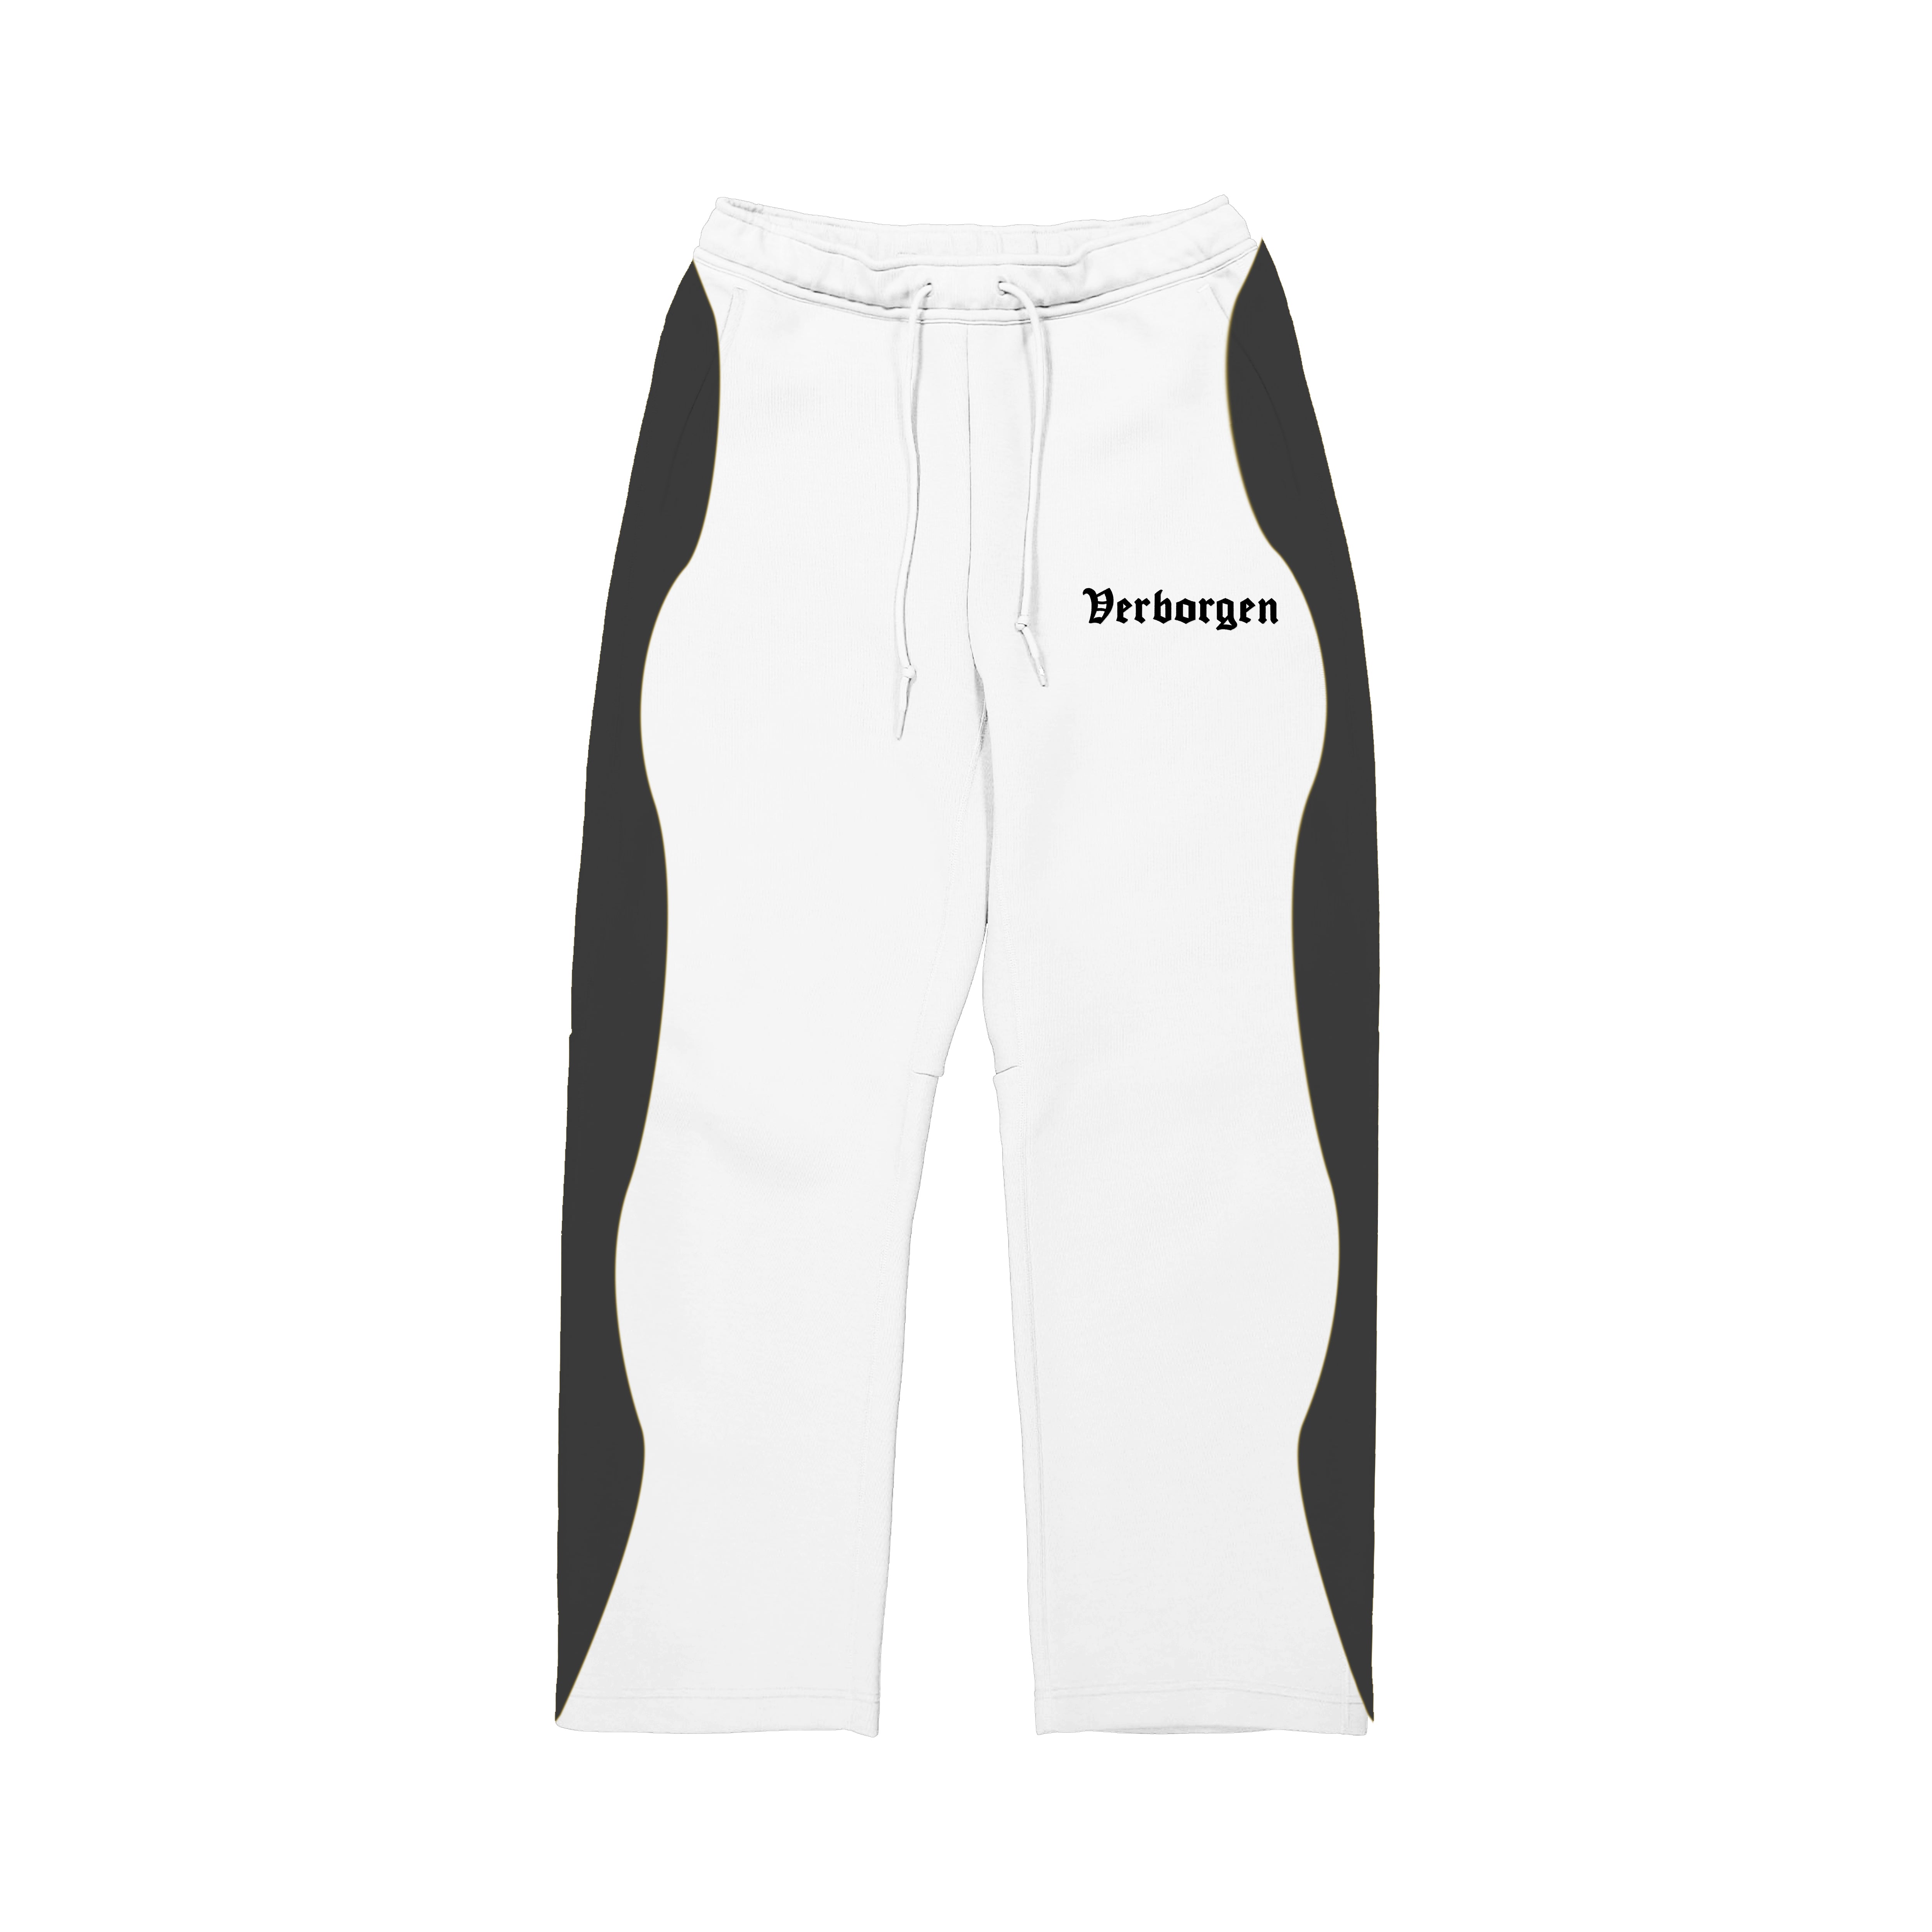 Pantalon de jogging brodé 2 tons - Blanc/Noir